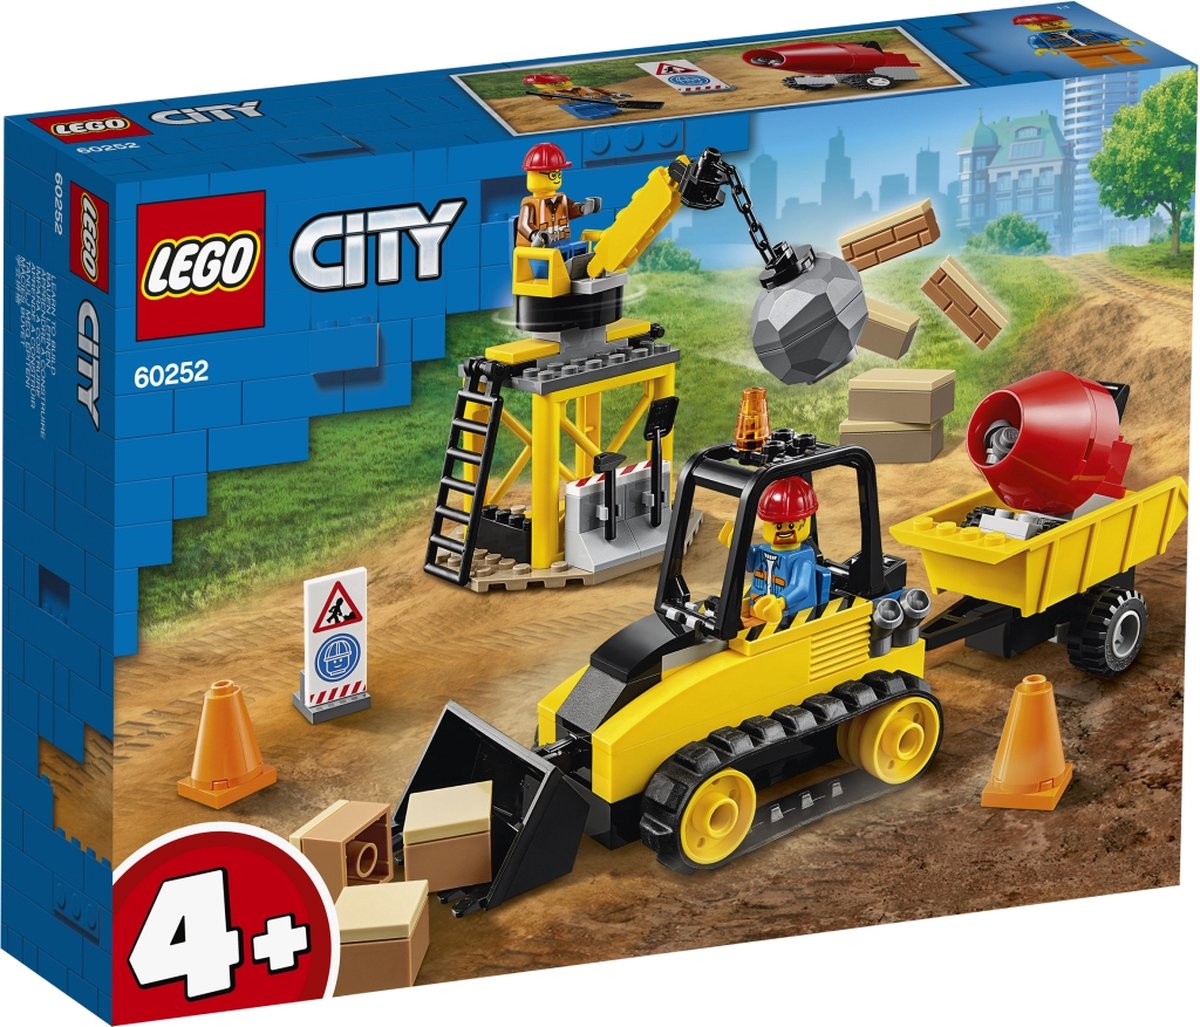 LEGO City 4+ Constructiebulldozer - 60252 | bol.com